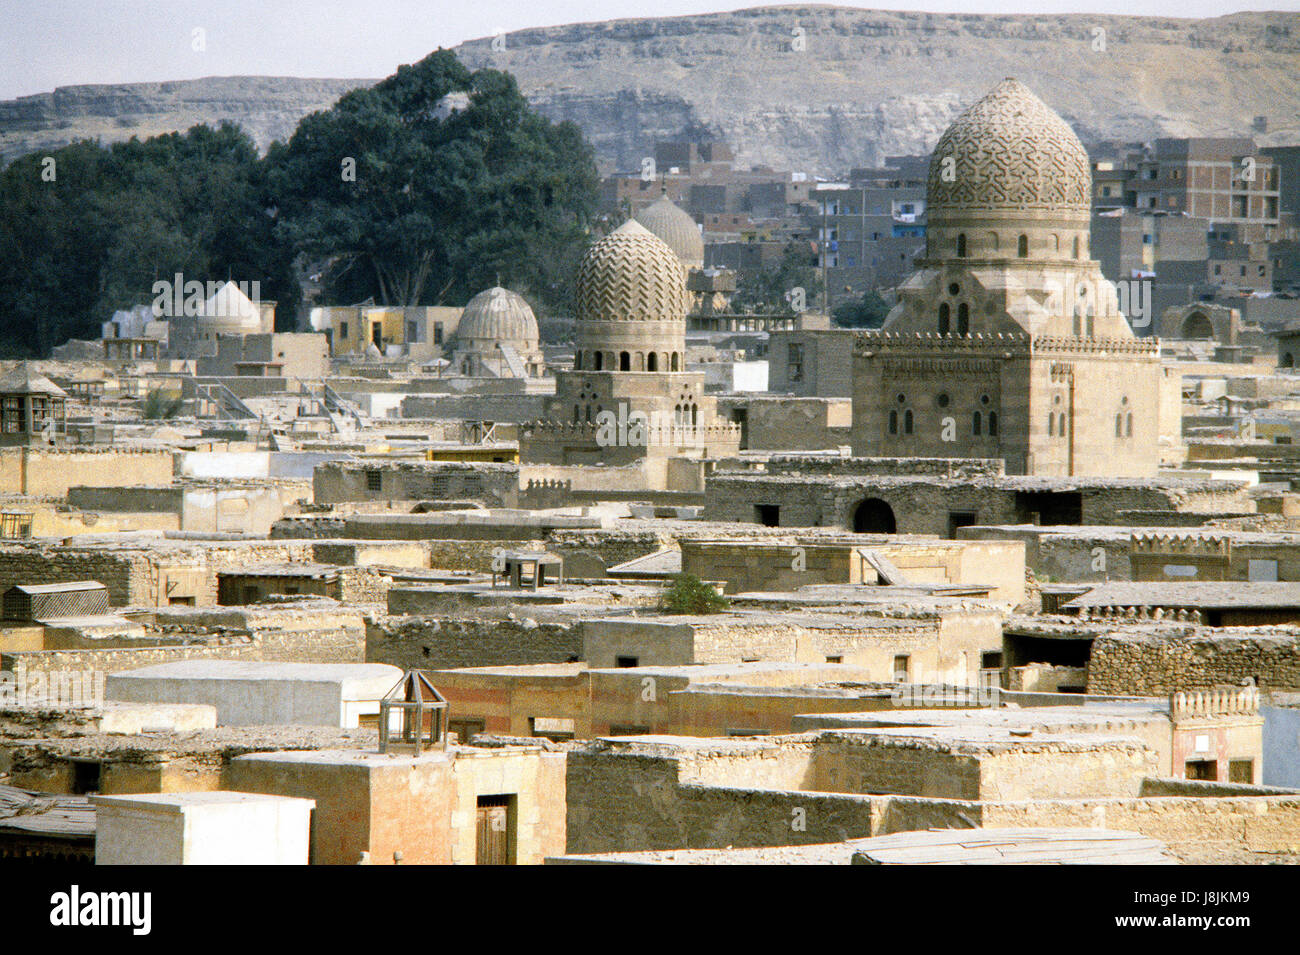 Sur le Caire, Egypte skyline montrant les minarets, clochers de temple et d'autres statues (date exacte non connue, mais vers le début des années 1980) Banque D'Images